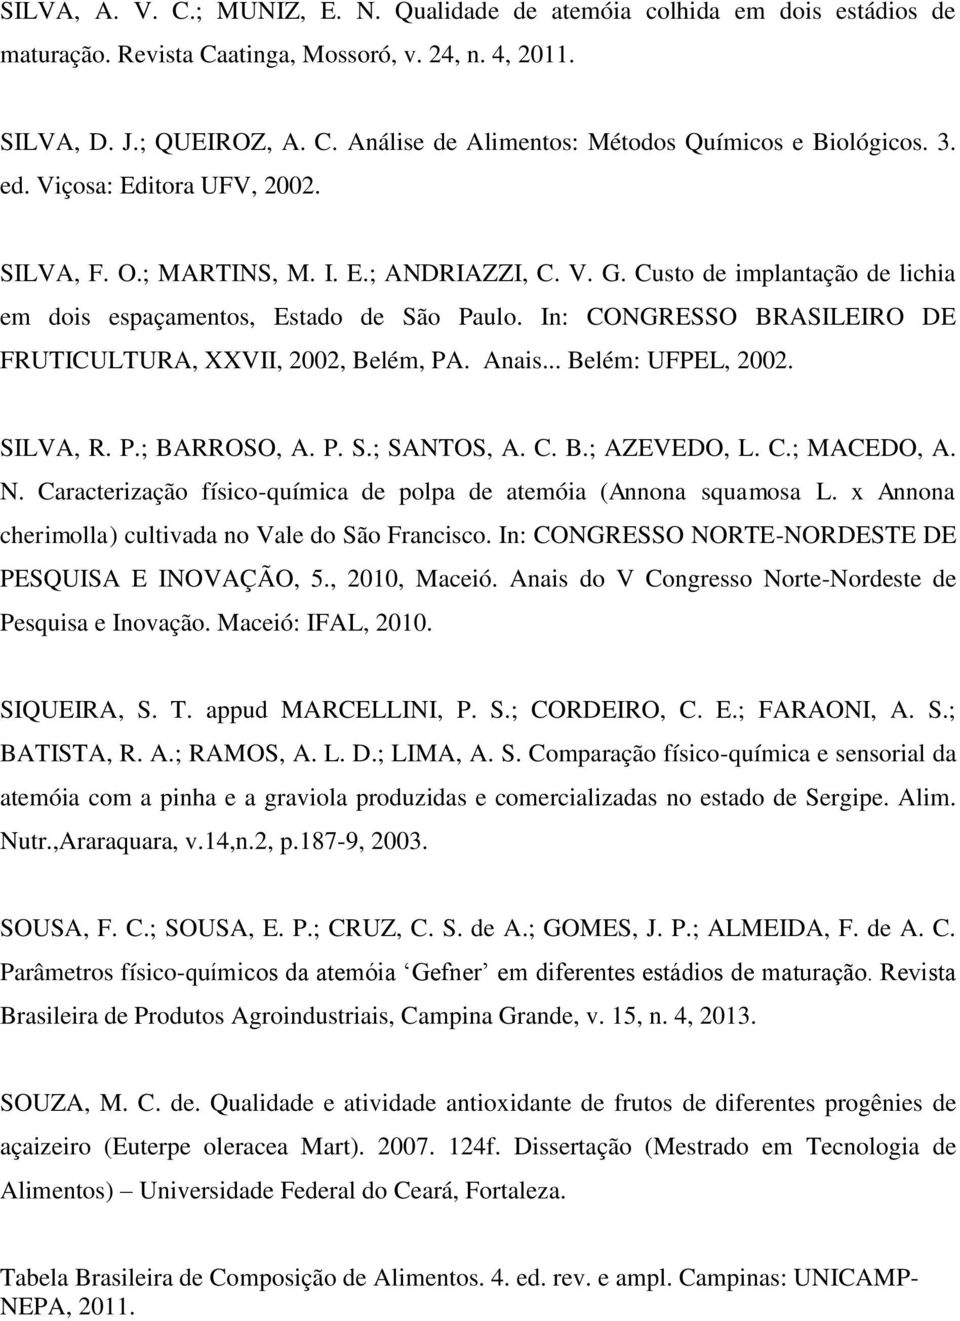 In: CONGRESSO BRASILEIRO DE FRUTICULTURA, XXVII, 2002, Belém, PA. Anais... Belém: UFPEL, 2002. SILVA, R. P.; BARROSO, A. P. S.; SANTOS, A. C. B.; AZEVEDO, L. C.; MACEDO, A. N.